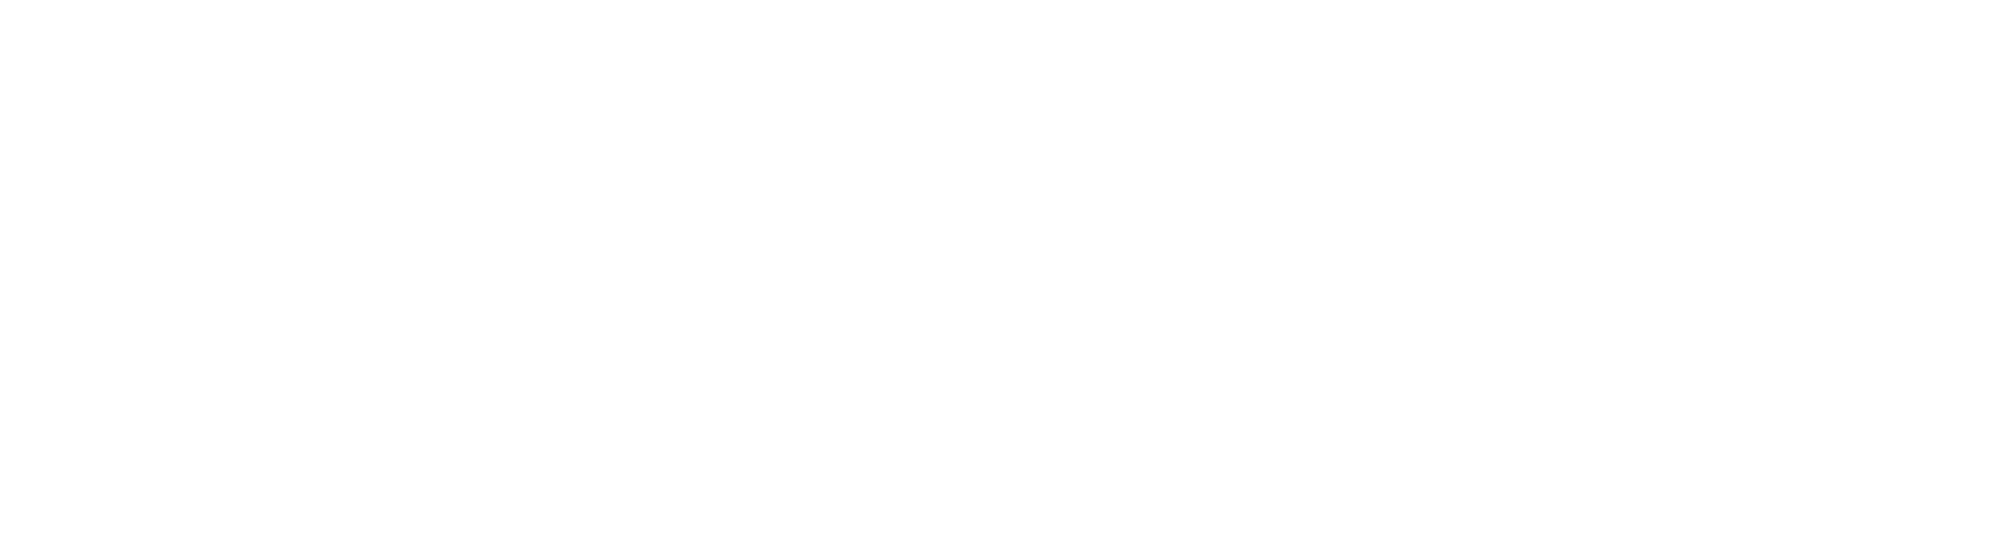 David Ruhm Logo White